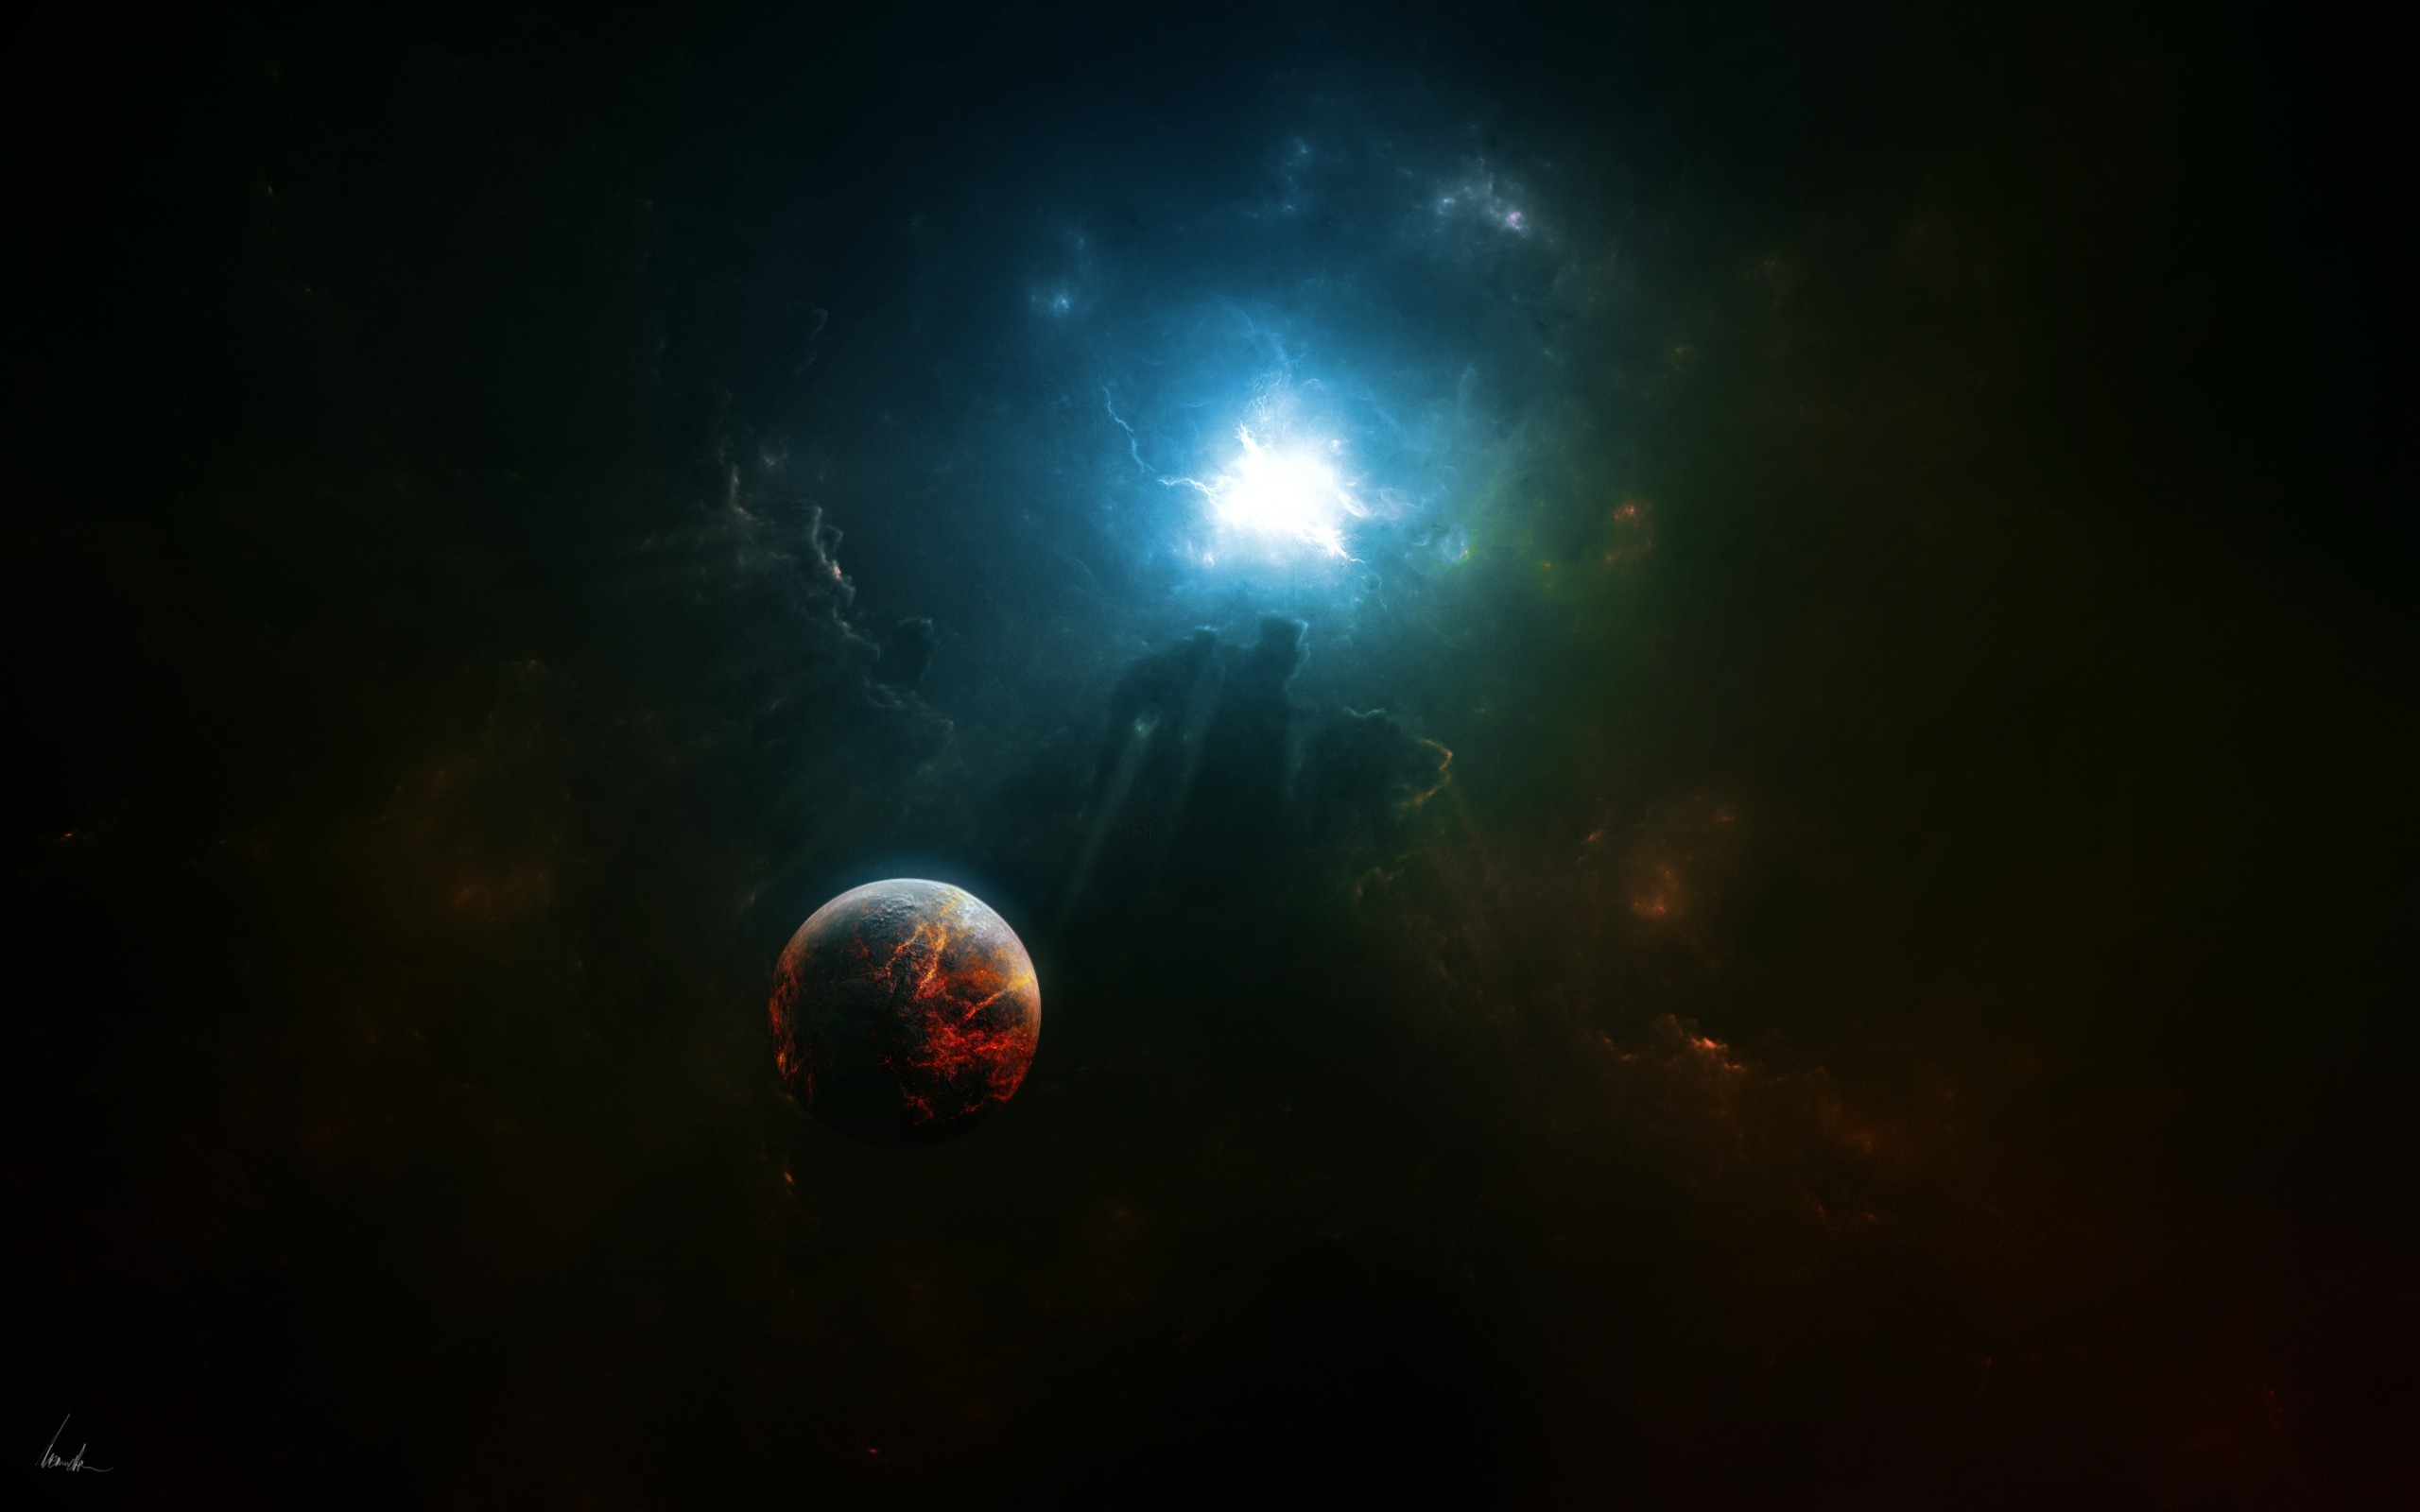 Обои Раскаленная планета картинки на рабочий стол на тему Космос - скачать бесплатно